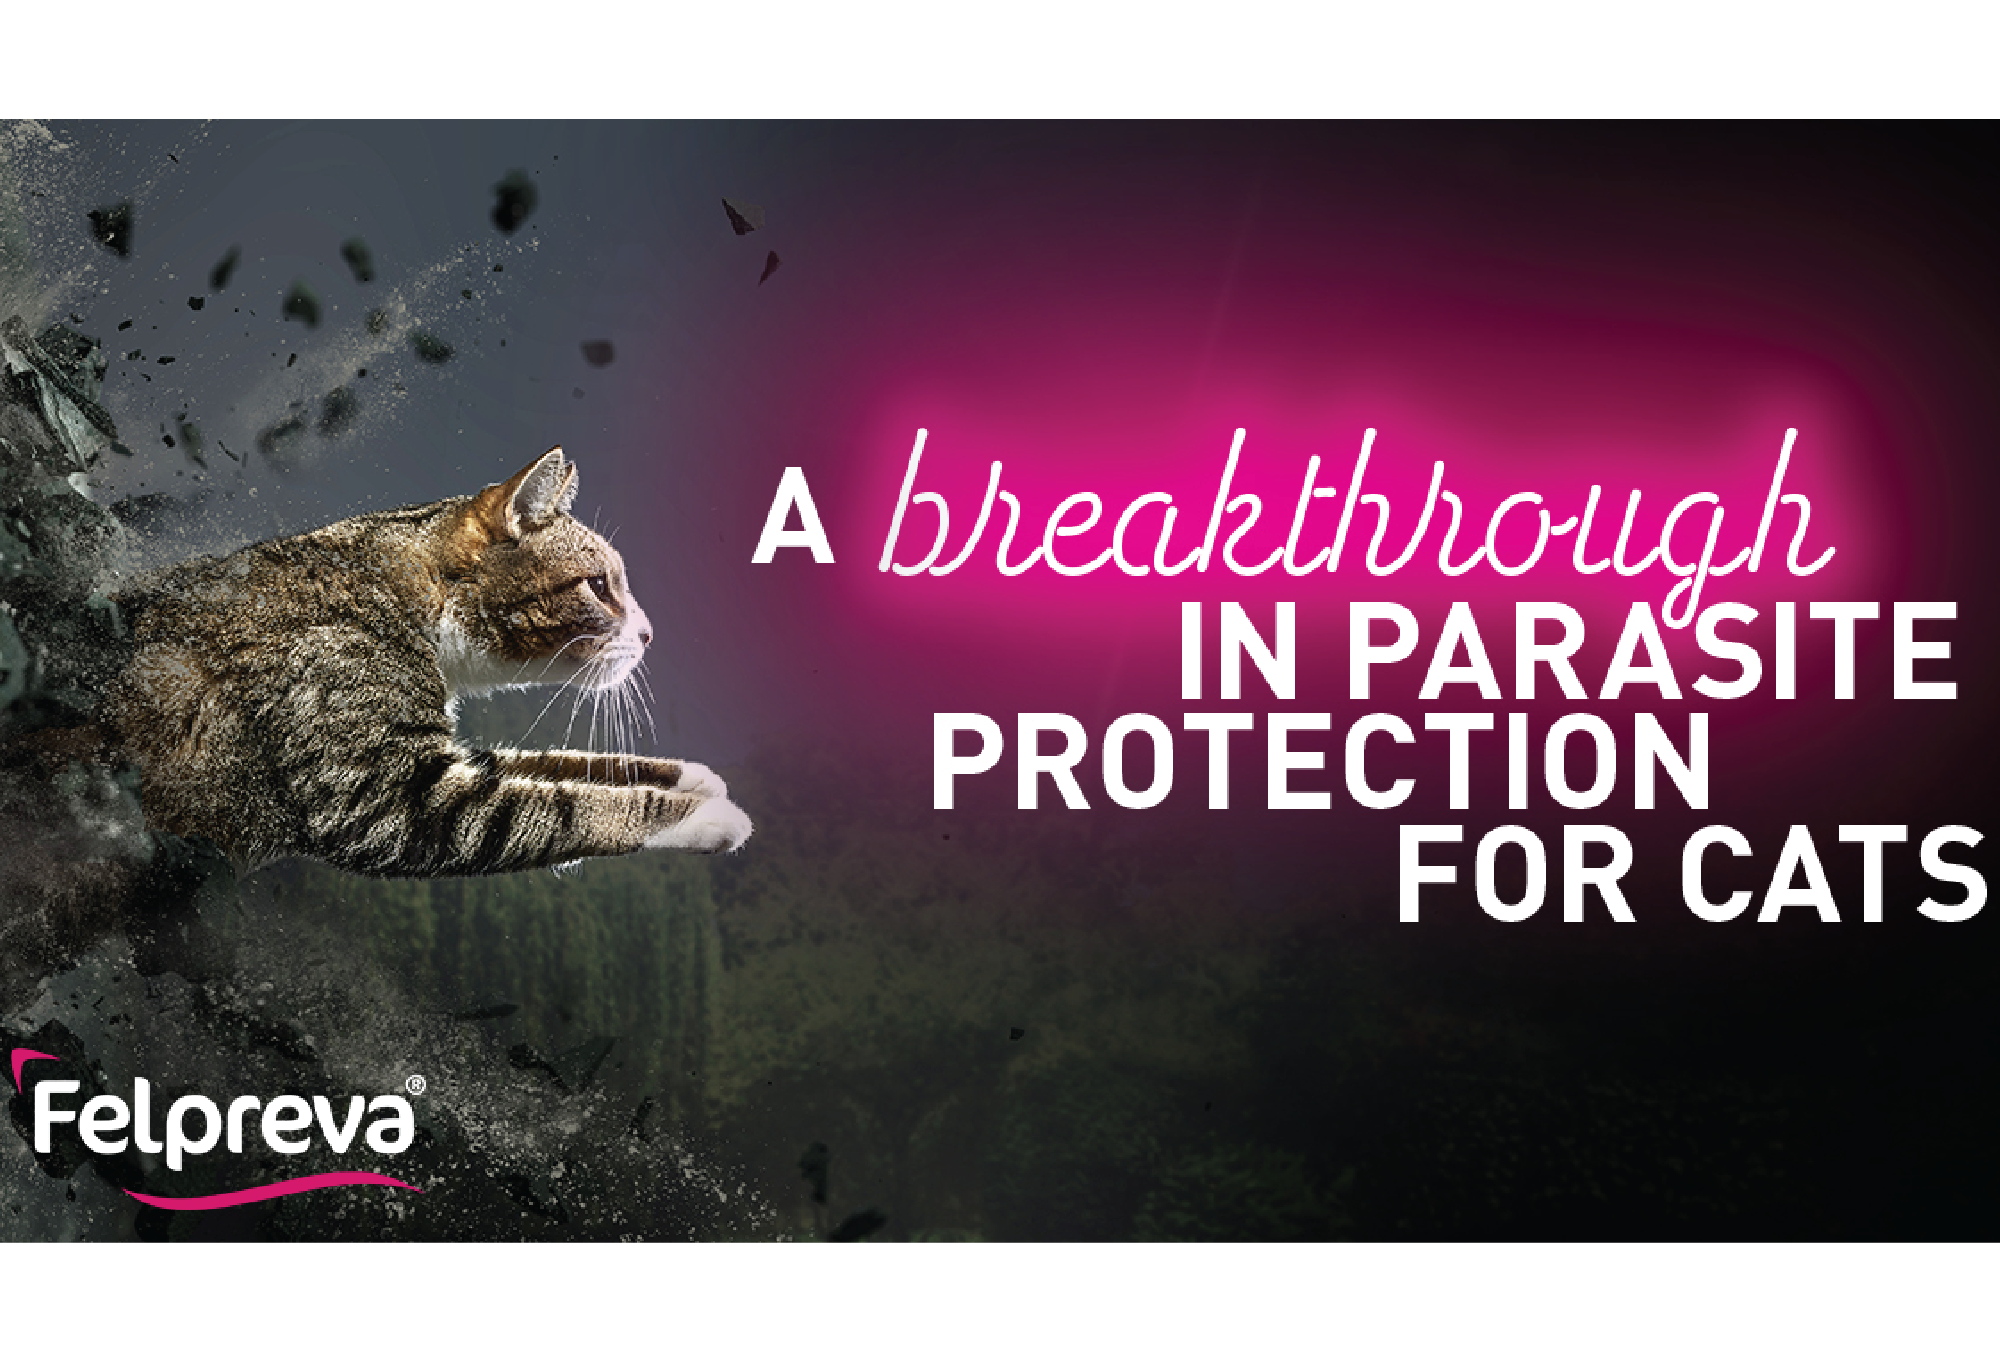 펠프레바 - 고양이를 위한 기생충 보호의 획기적인 제품. 이 새로운 스팟온 치료제로 벼룩, 진드기, 벌레로부터 고양이 친구를 보호하세요. 